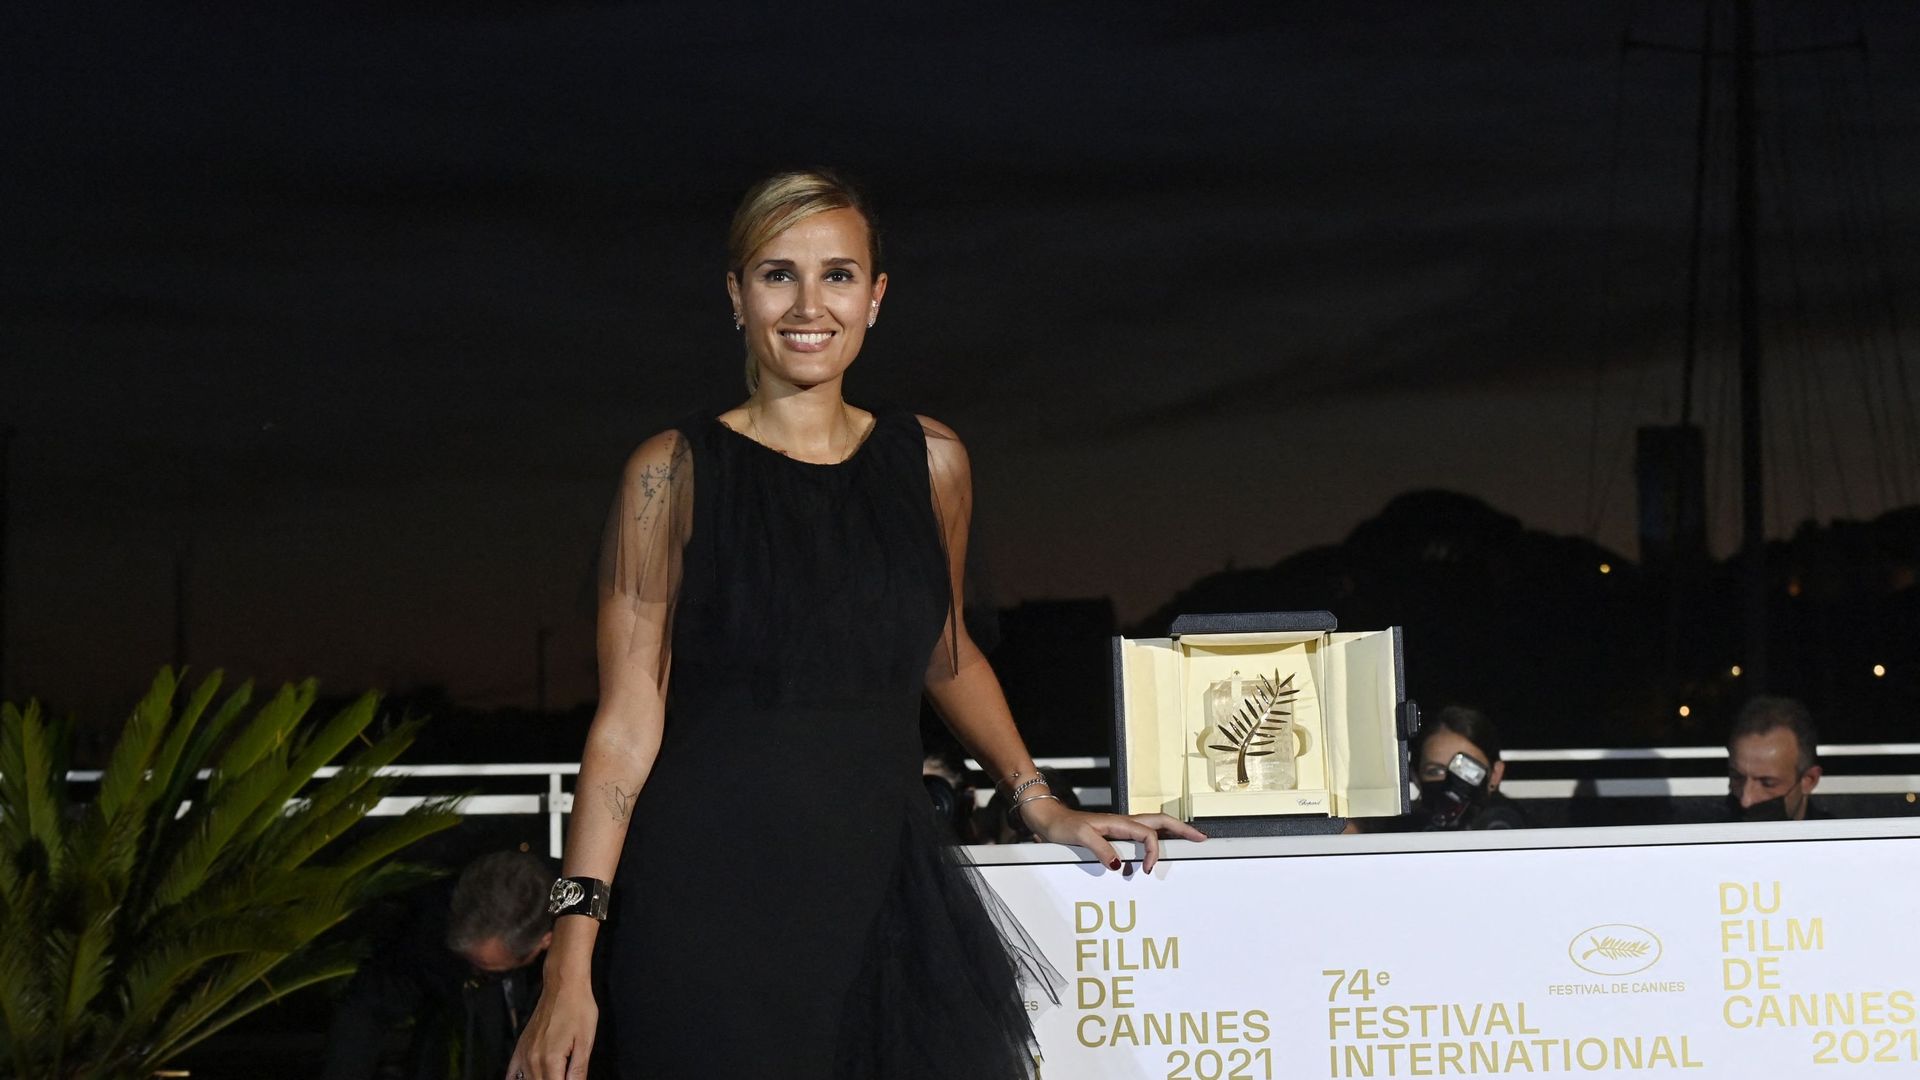 Photographie de la réalisatrice Julia Ducournau faisant partie du jury 2023 du festival de Cannes. Elle avait remporté la Palme d’or avec son film "Titane" en 2021.